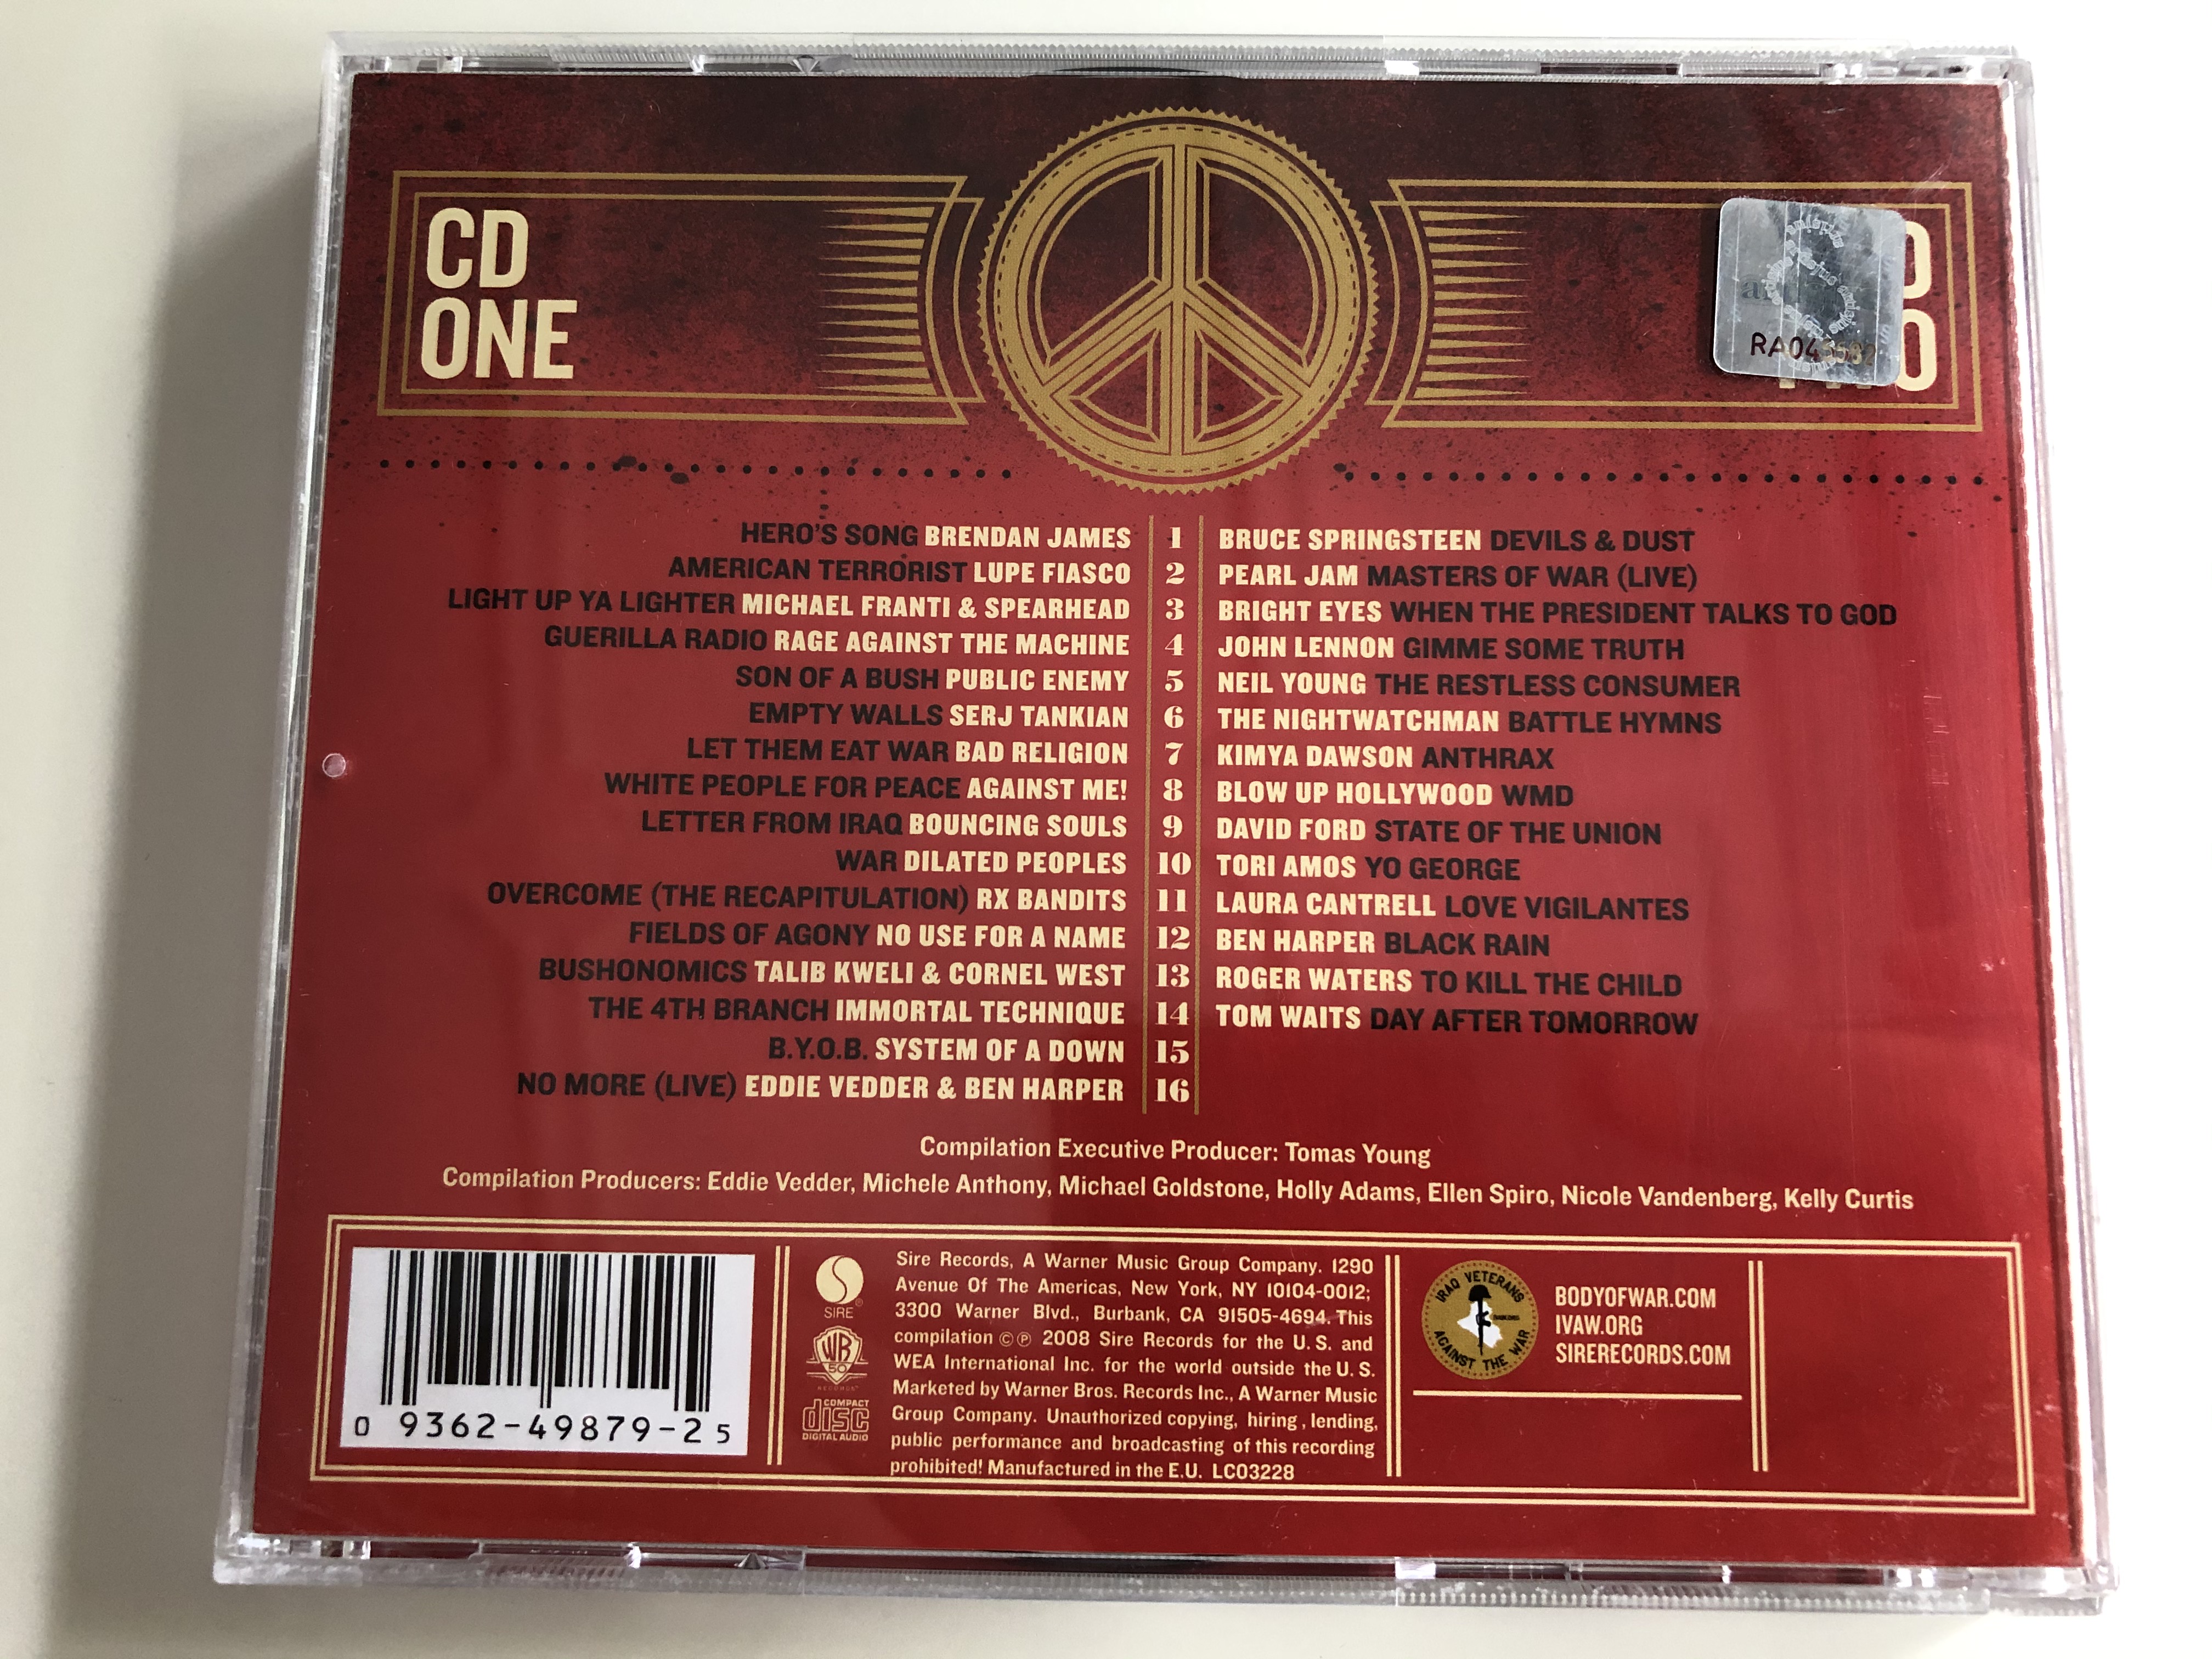 body-of-war-songs-that-inspired-an-iraq-war-veteran-sire-2x-audio-cd-2008-9362-49079-2-9-.jpg